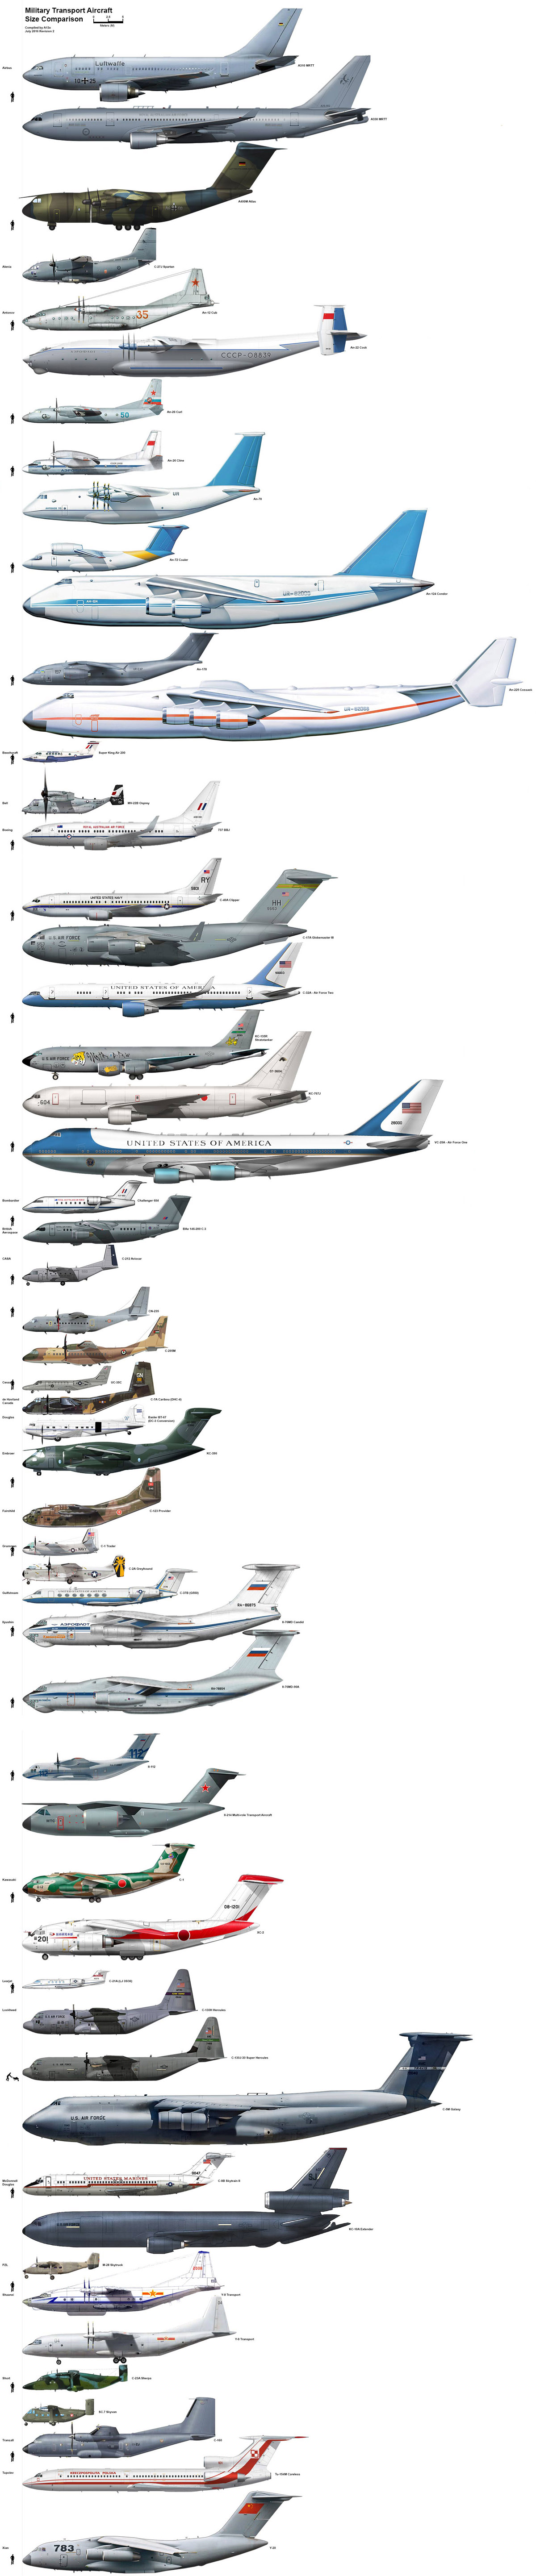 Jet Comparison Chart